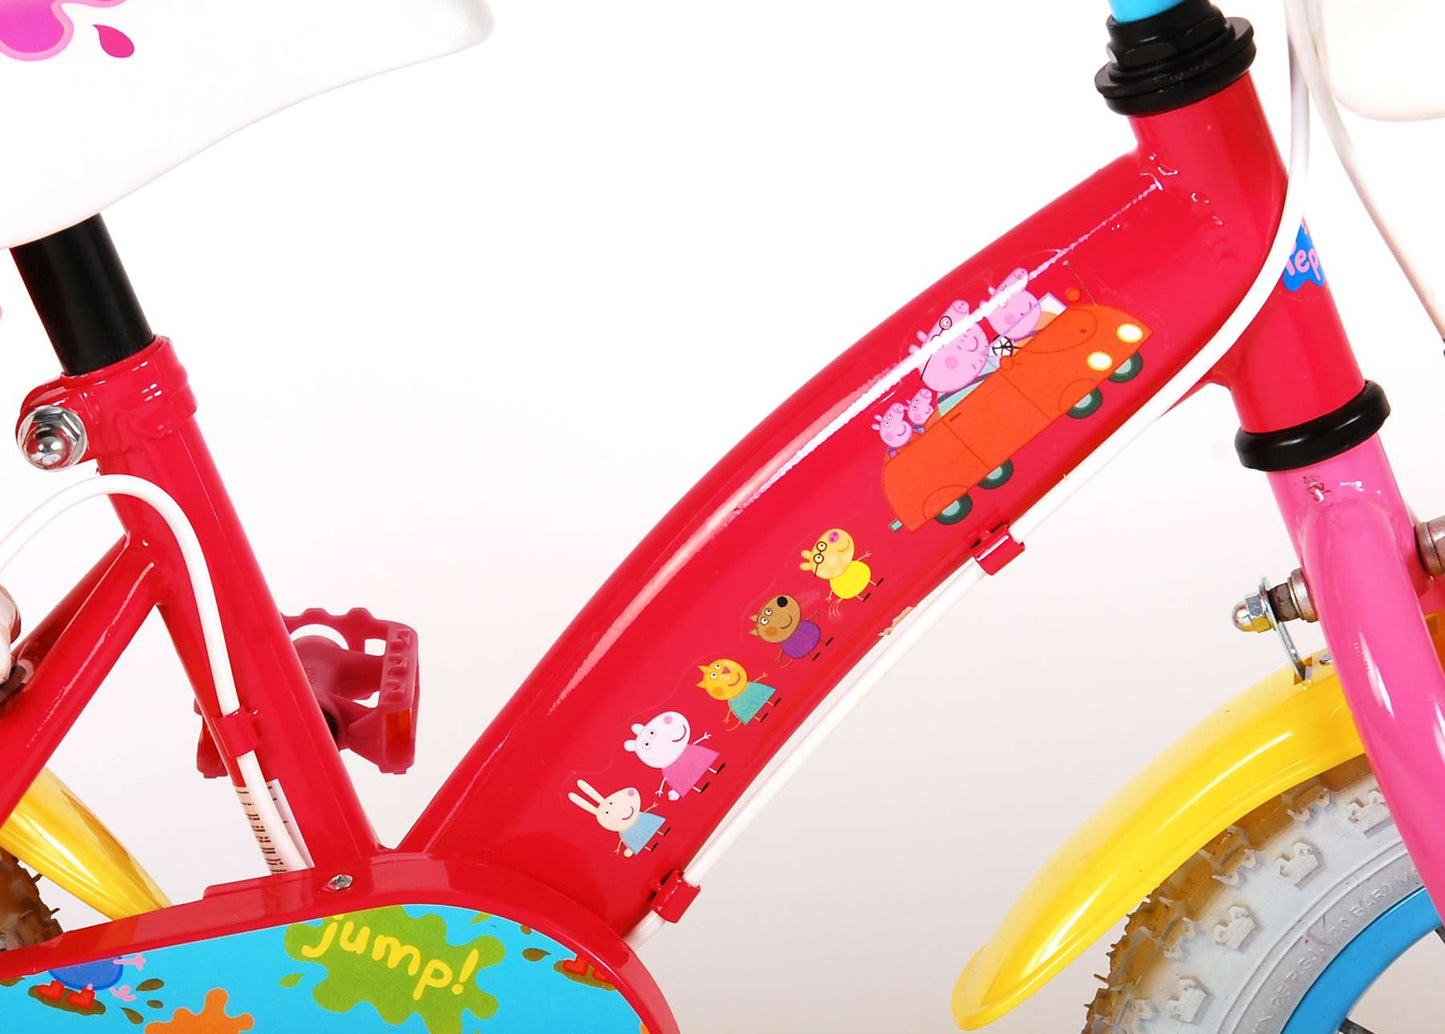 Peppa Pig Bicycle para niños - Niñas - 12 pulgadas - Pink - Dos frenos de mano